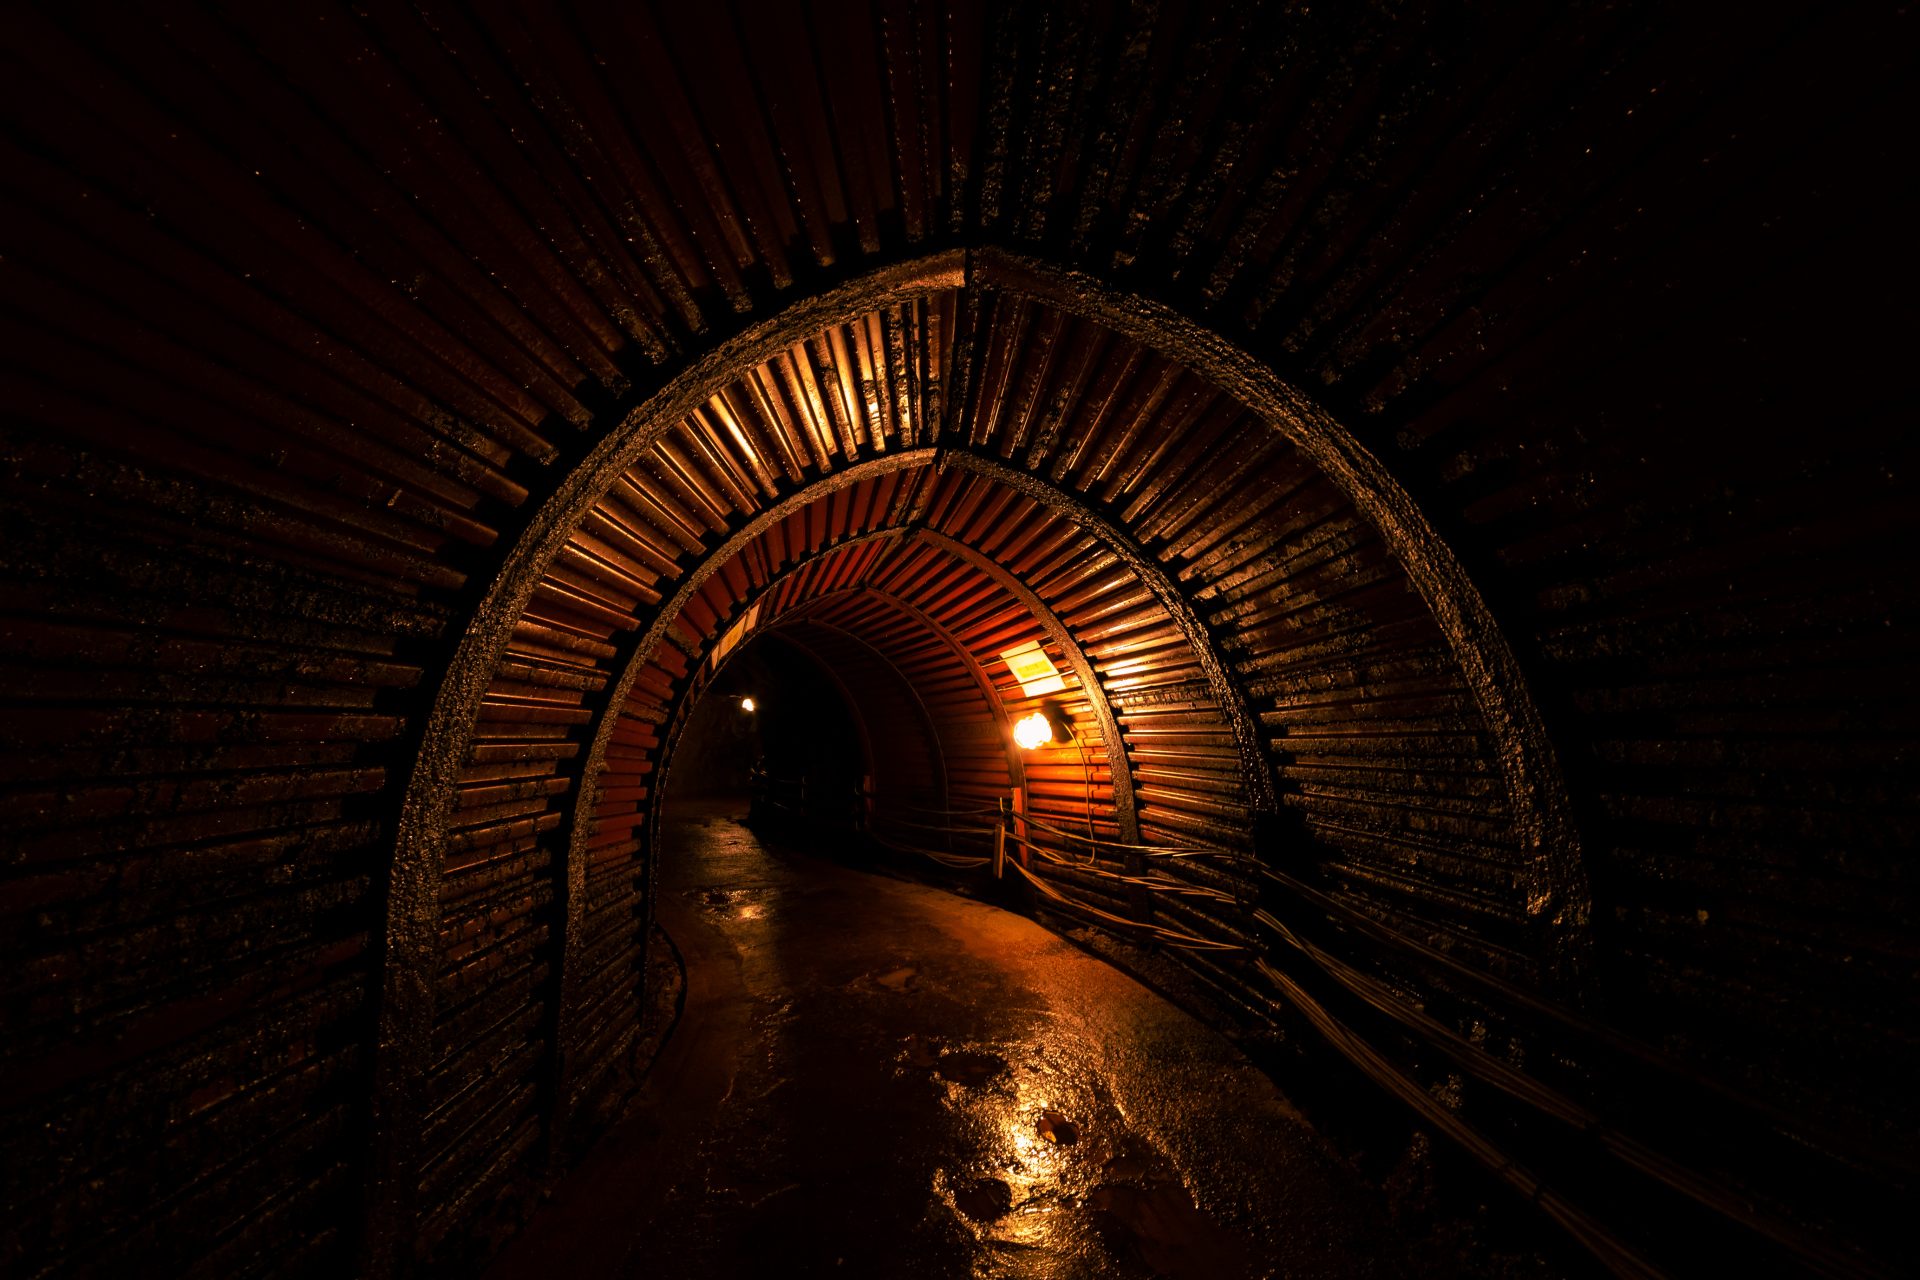 昏暗的隧道全年氣溫為13ºC（55°F），夏涼冬暖。